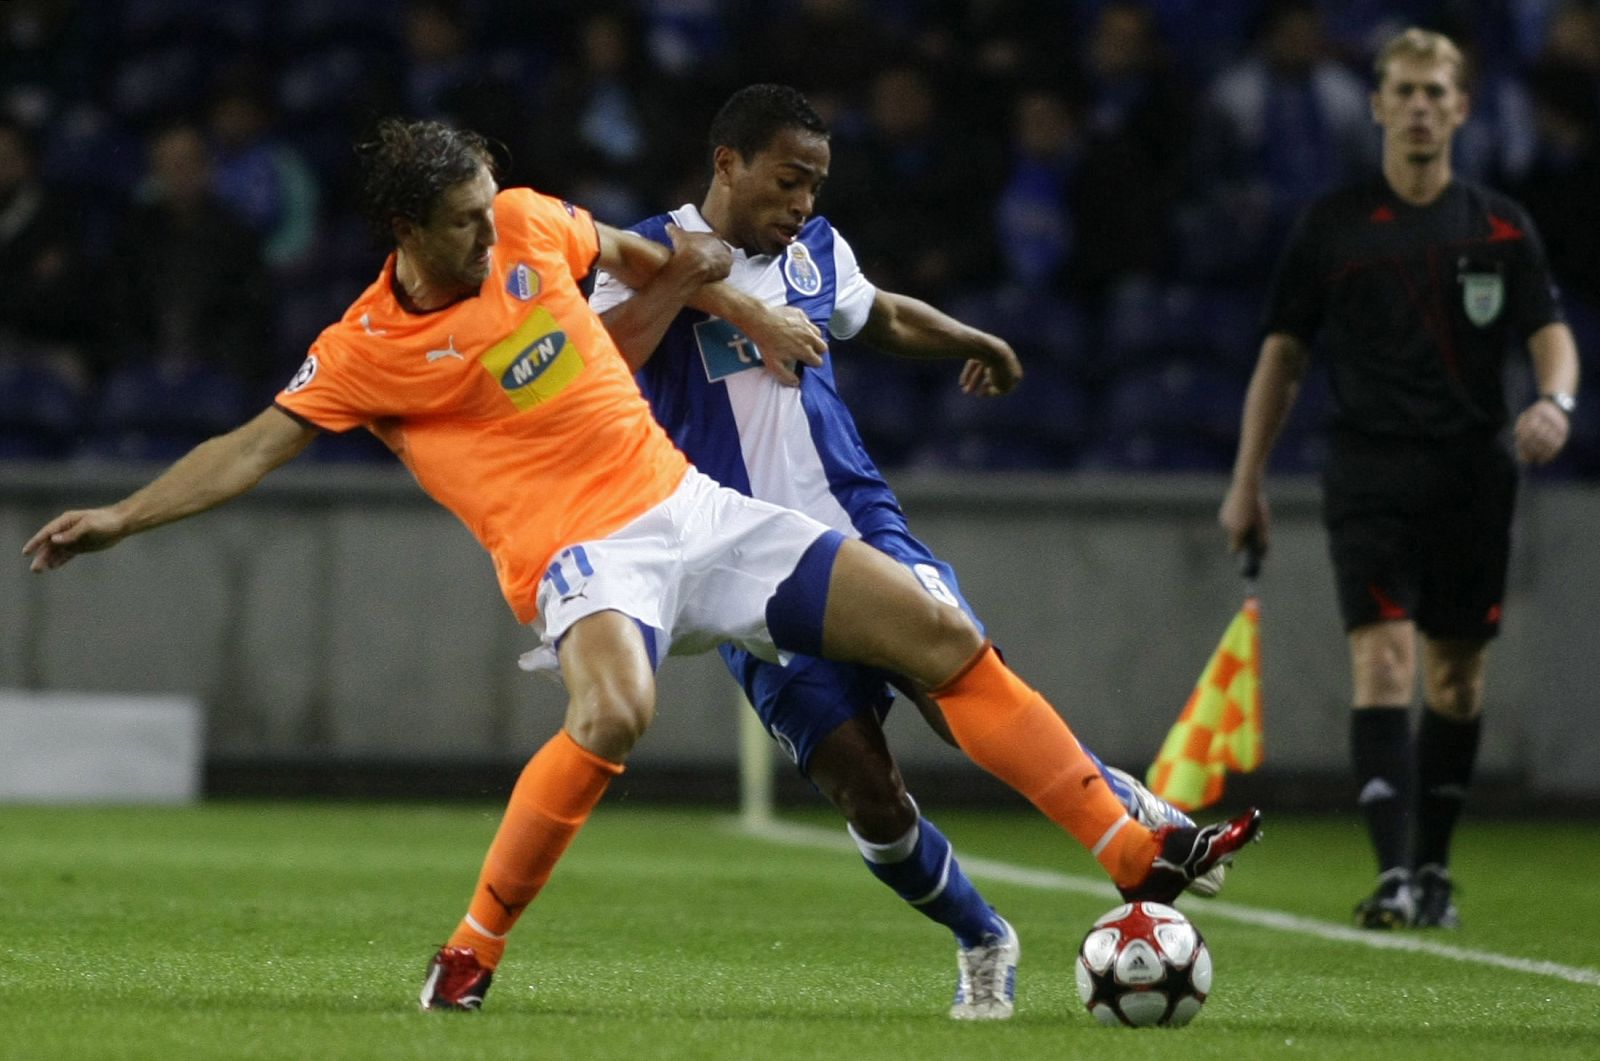 Porto's Pereira battles for the ball with Apoel Nicosia's Kosowski during their Champions League match in Porto